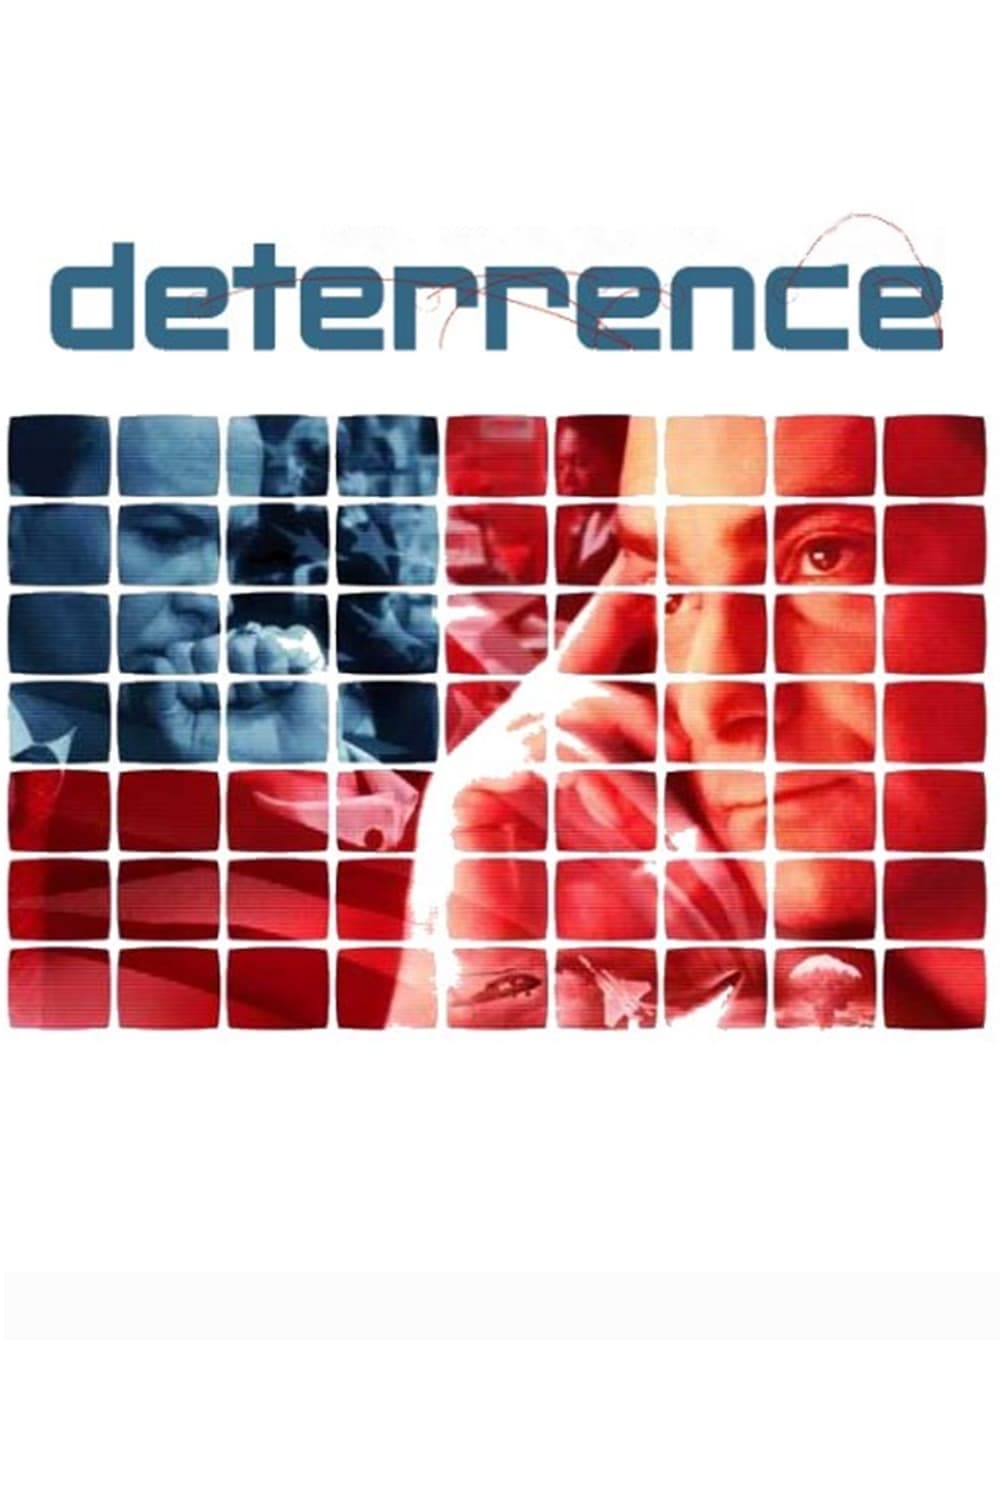 Affiche du film Deterrence poster